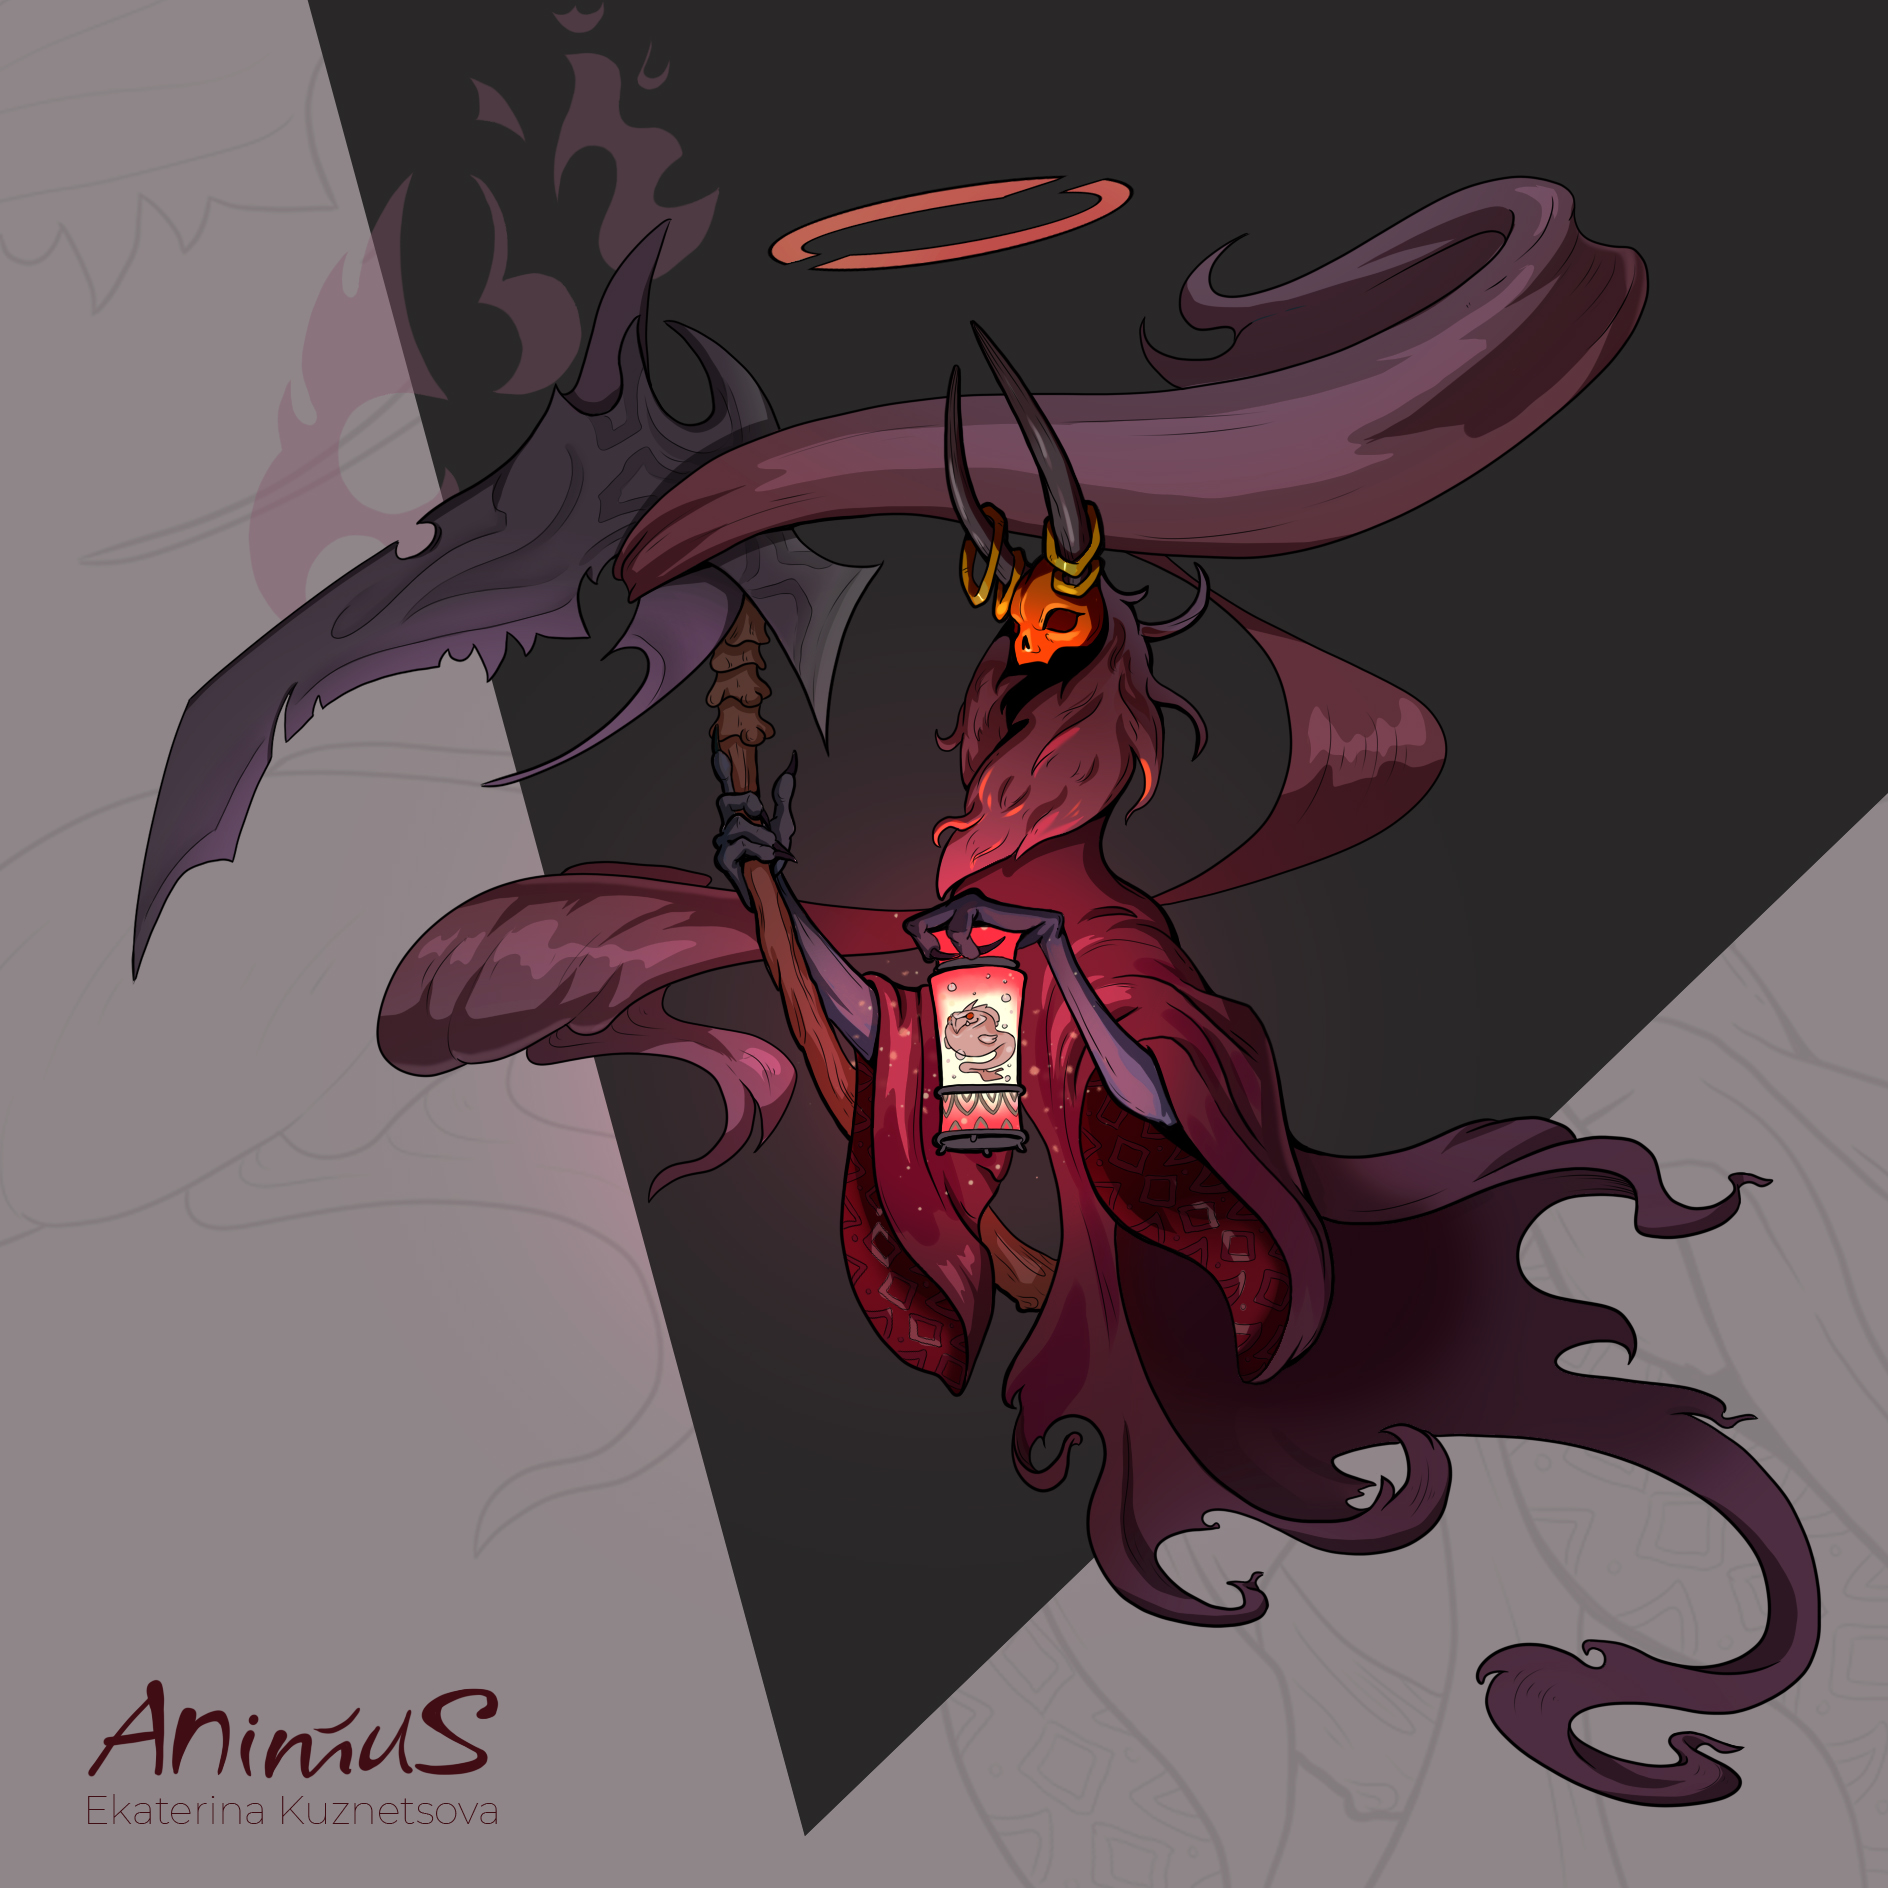 Animus, Creature of Death